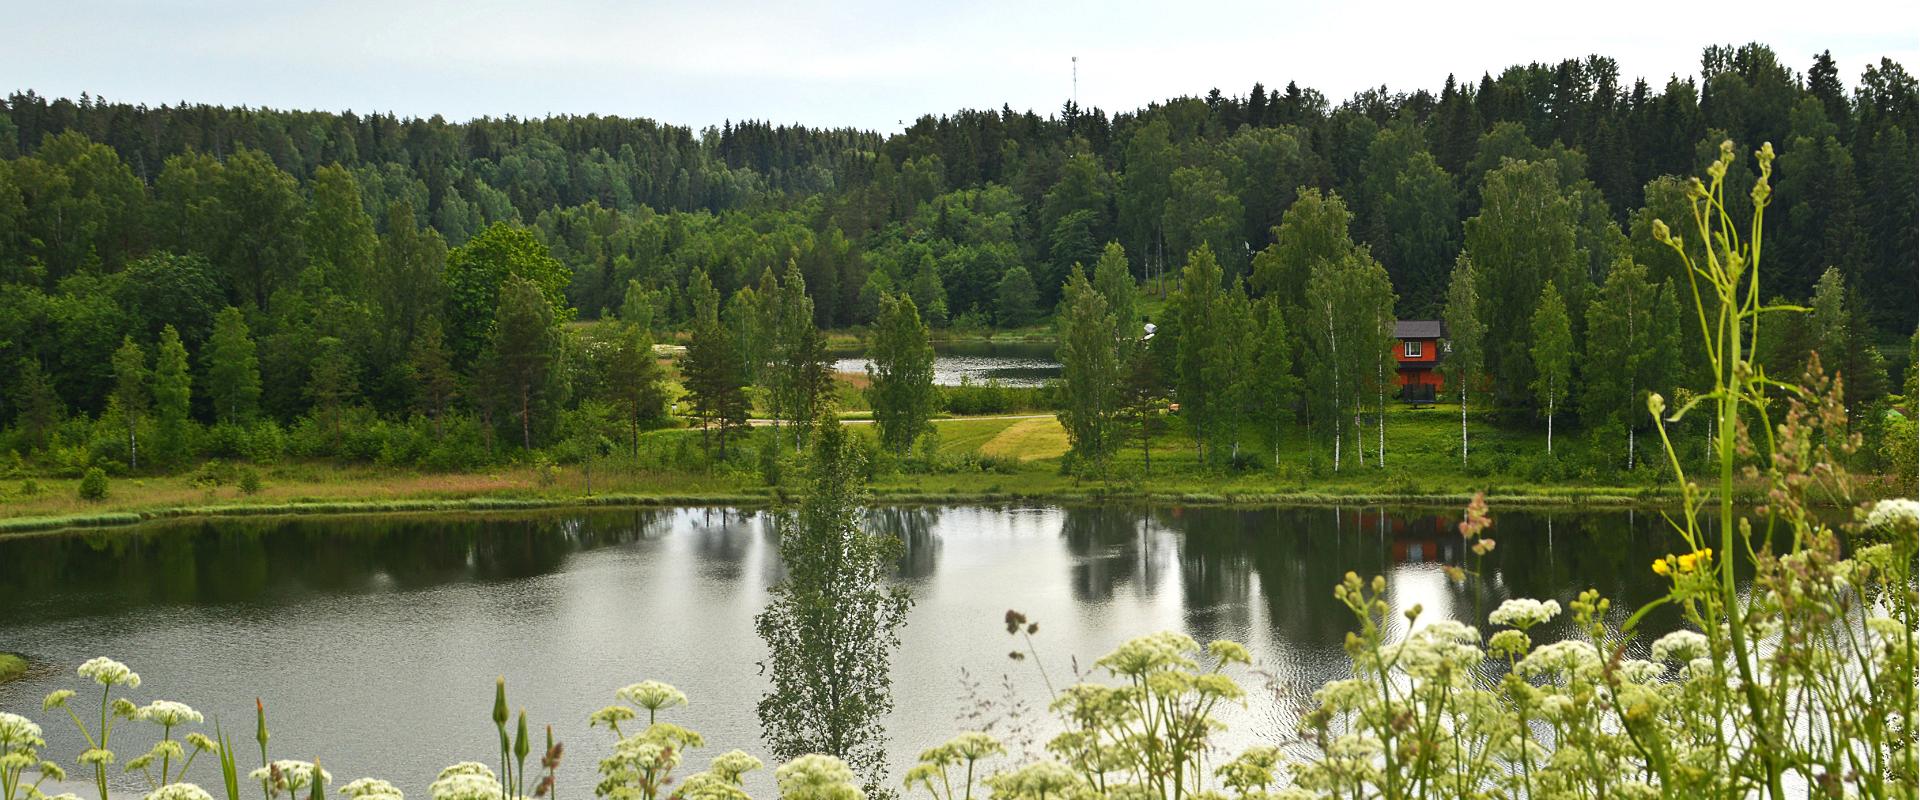 Ööbikuorg valley and Rõuge lakes